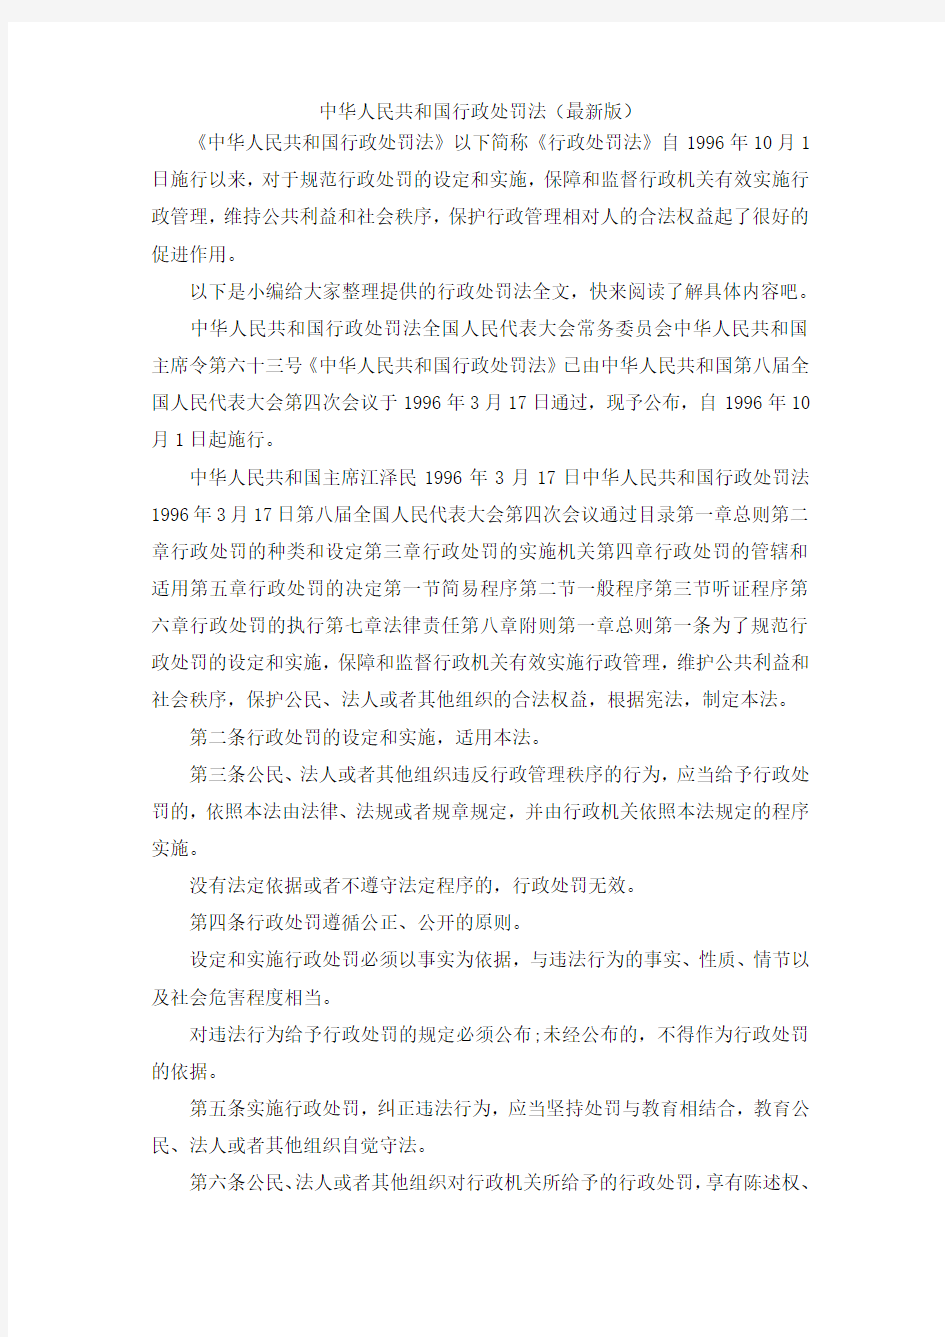 推荐下载  中华人民共和国行政处罚法(最新版)-最新